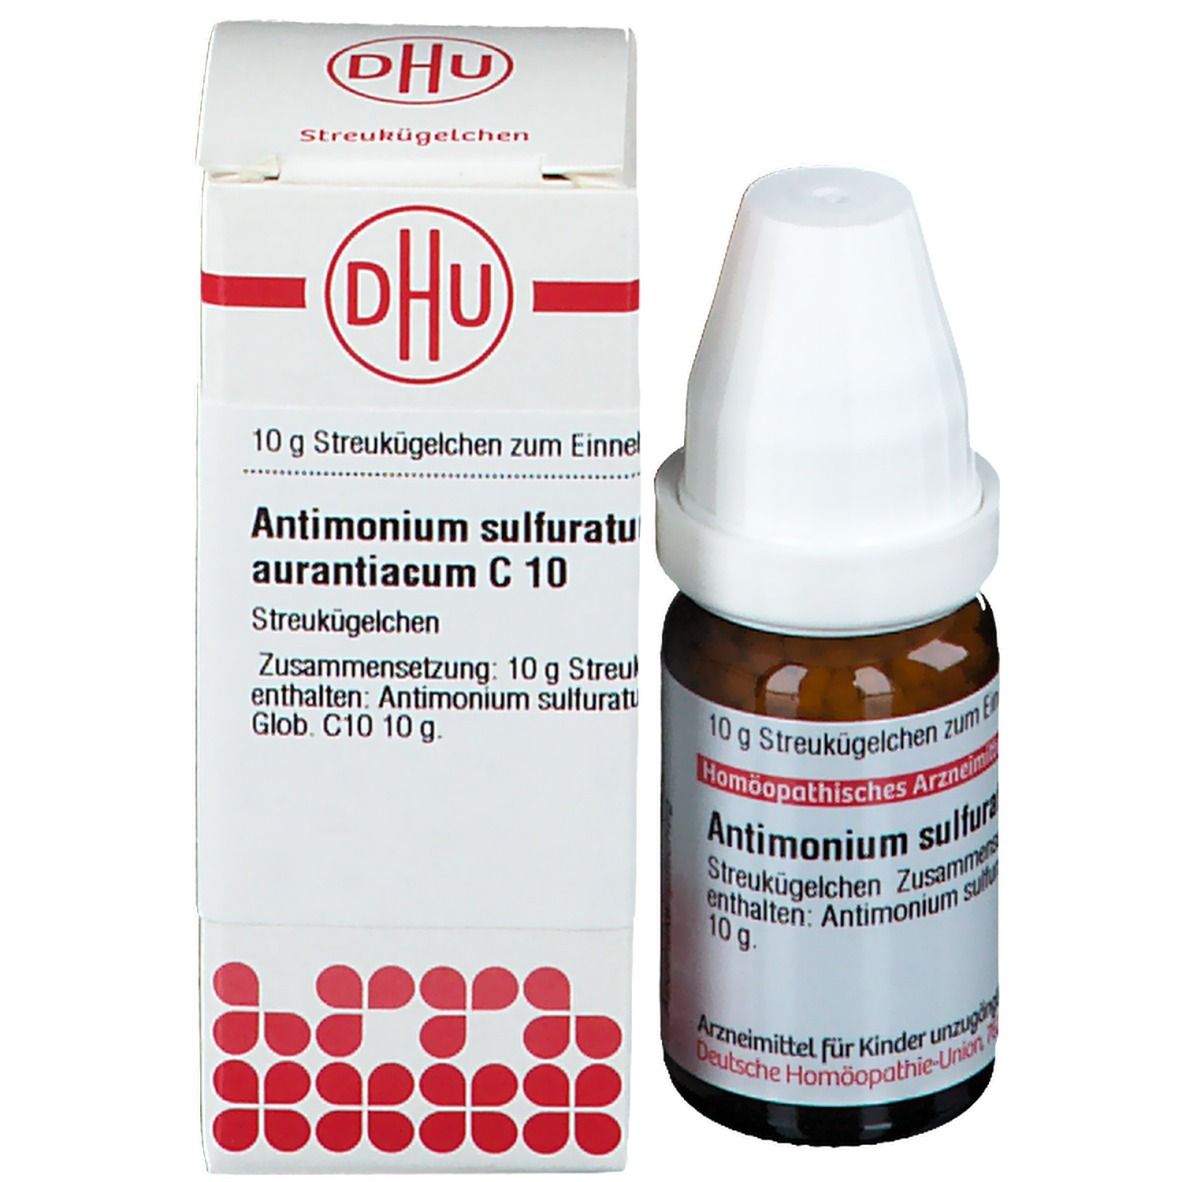 DHU Antimonium Sulfuratum Aurantiacum C10